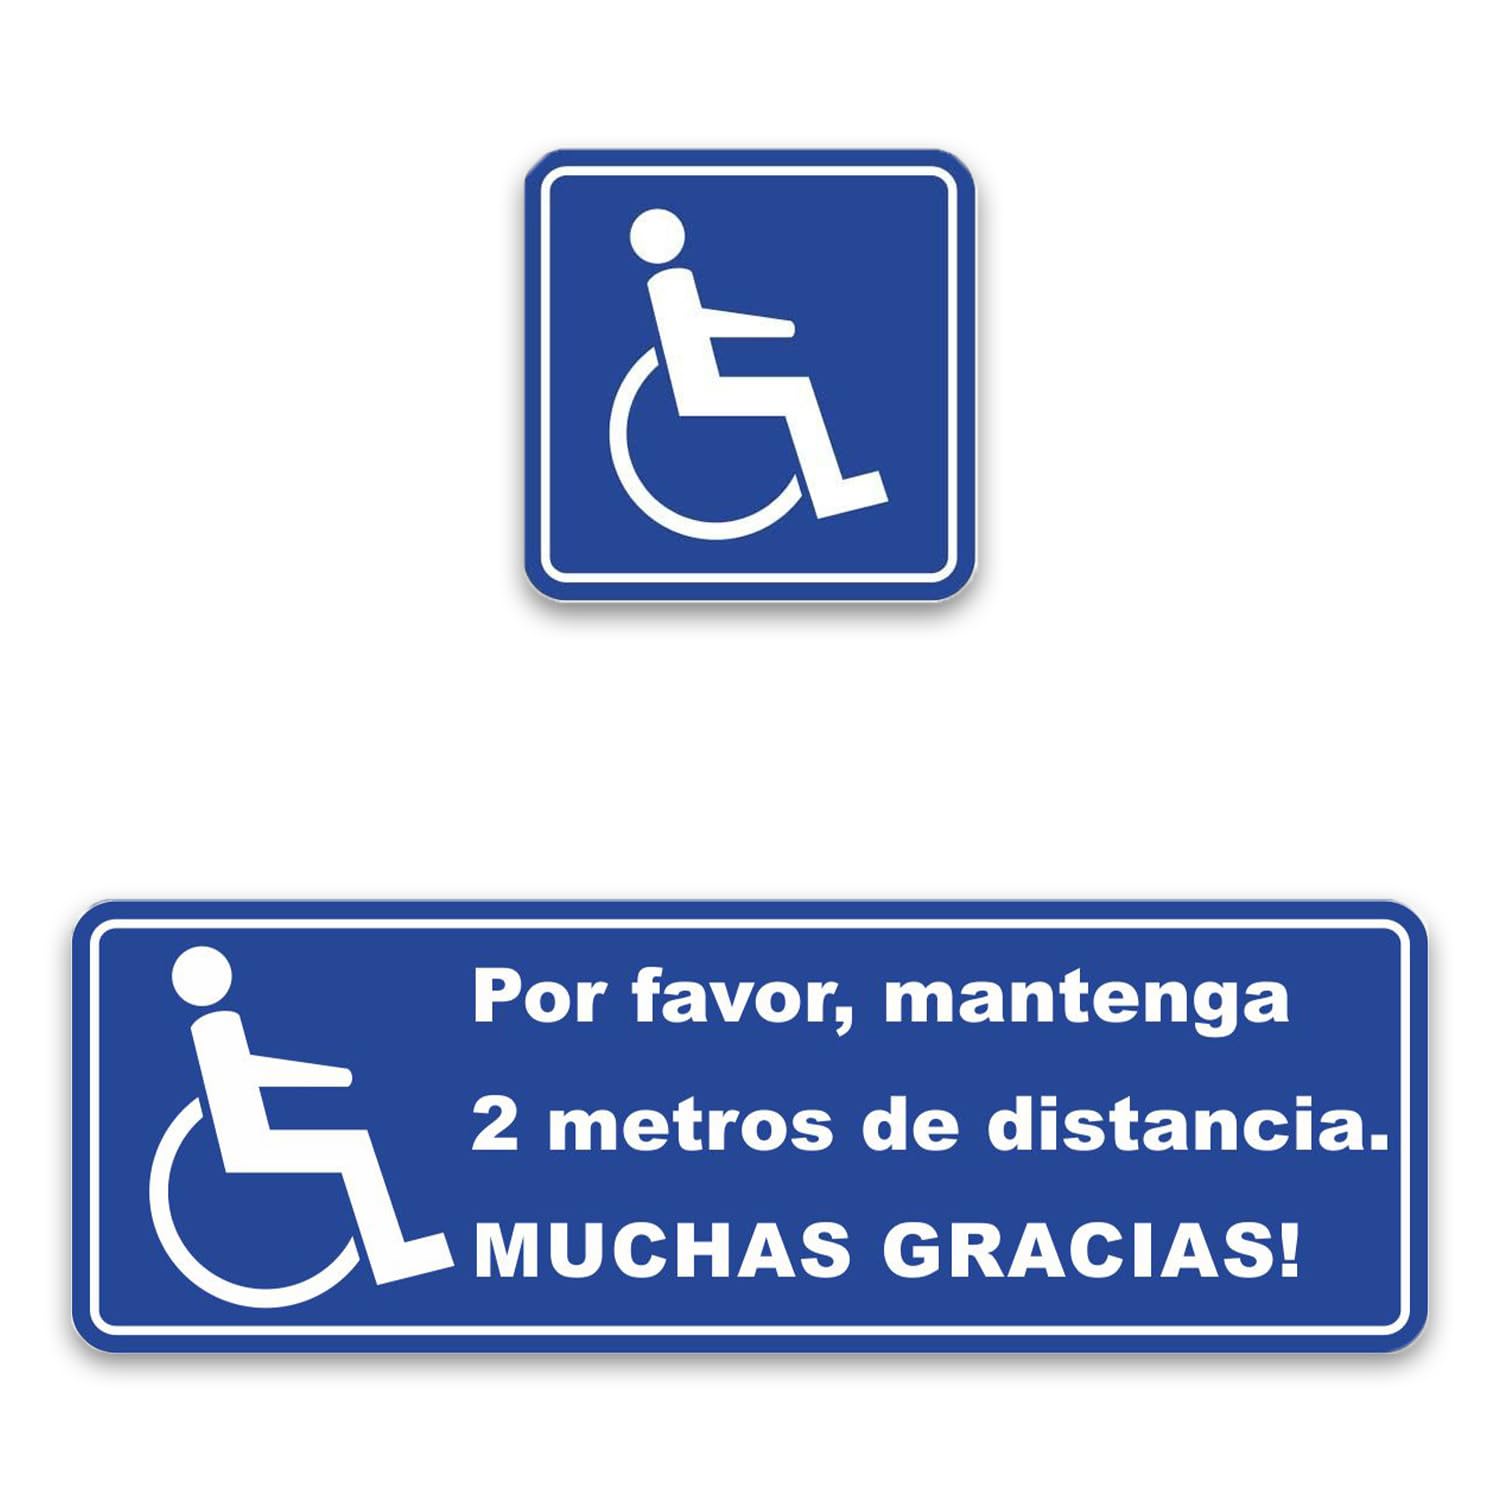 Aufkleber-Set Bitte 2 Meter Abstand halten. Vielen Dank! + Rollstuhlfahrer-Aufkleber I (Spanisch) - Autoaufkleber, Rollstuhl, Rolli I hin_244 von iSecur